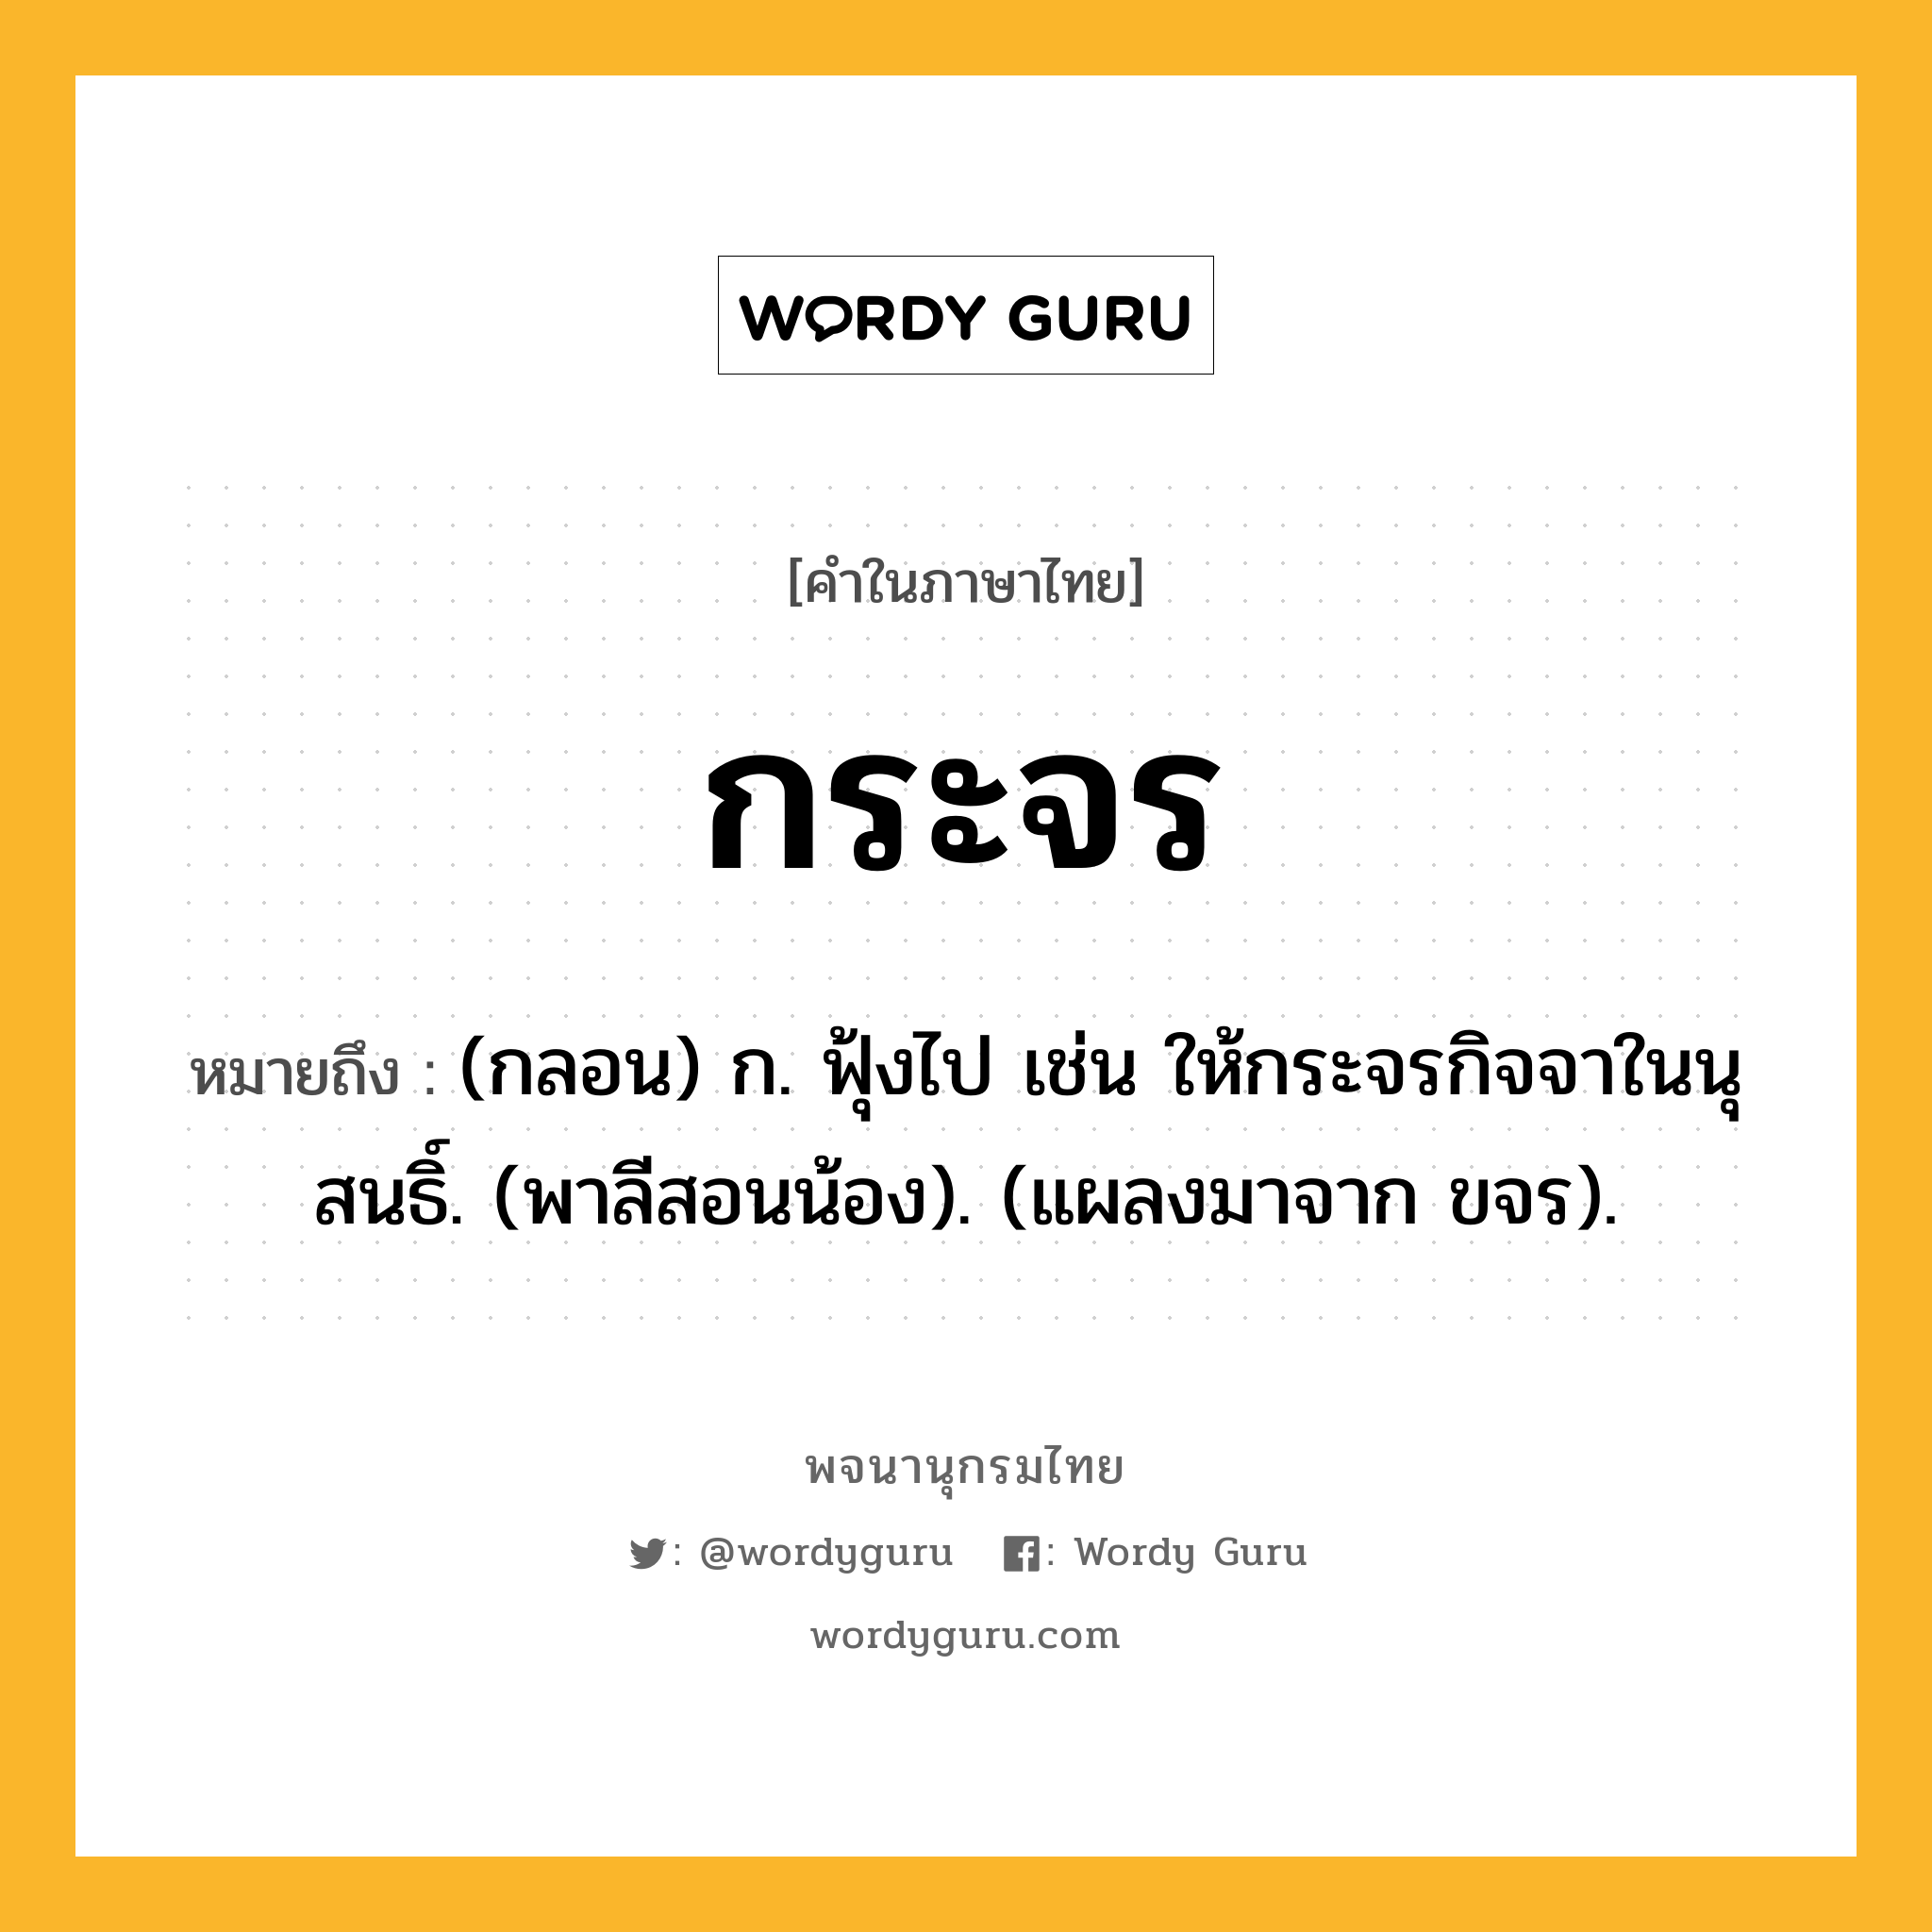 กระจร ความหมาย หมายถึงอะไร?, คำในภาษาไทย กระจร หมายถึง (กลอน) ก. ฟุ้งไป เช่น ให้กระจรกิจจาในนุสนธิ์. (พาลีสอนน้อง). (แผลงมาจาก ขจร).